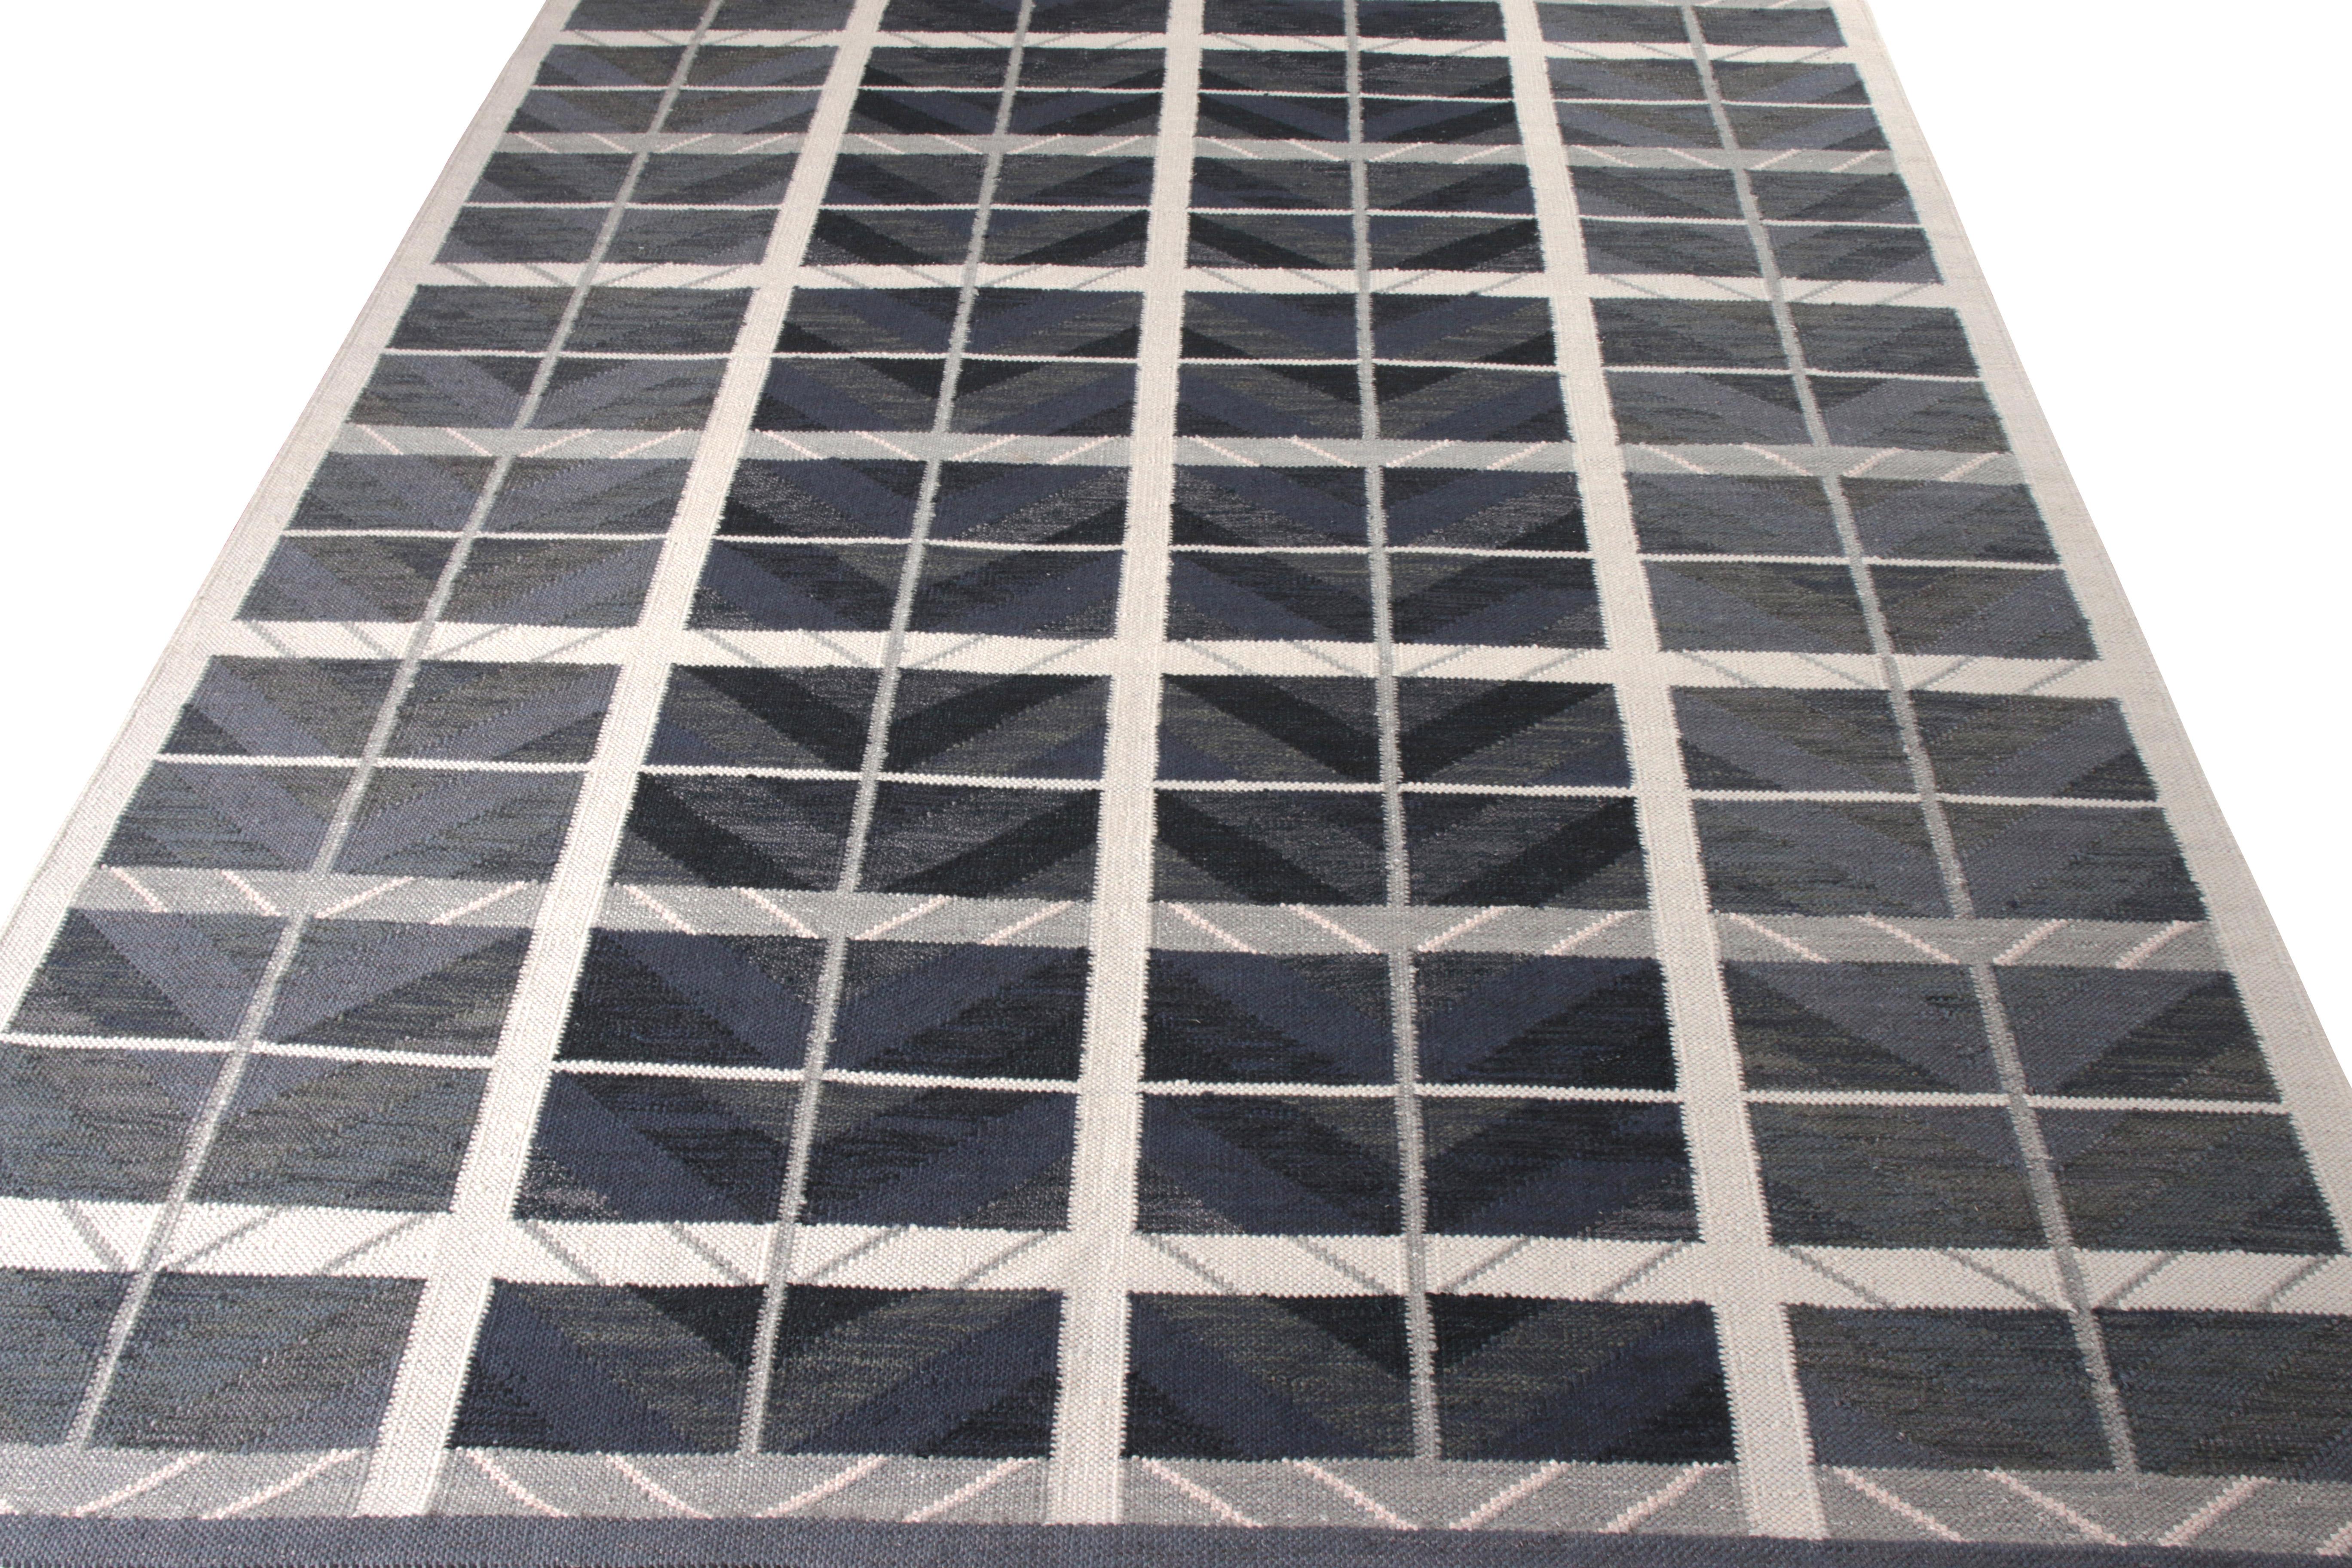 Ce tapis Kilim de 9 x 12 fait partie de la collection scandinave de Rug & Kilim. Tissé à la main en laine, ce tapis rend hommage au modernisme suédois avec un nouveau motif géométrique à grande échelle qui rappelle les inspirations du design du